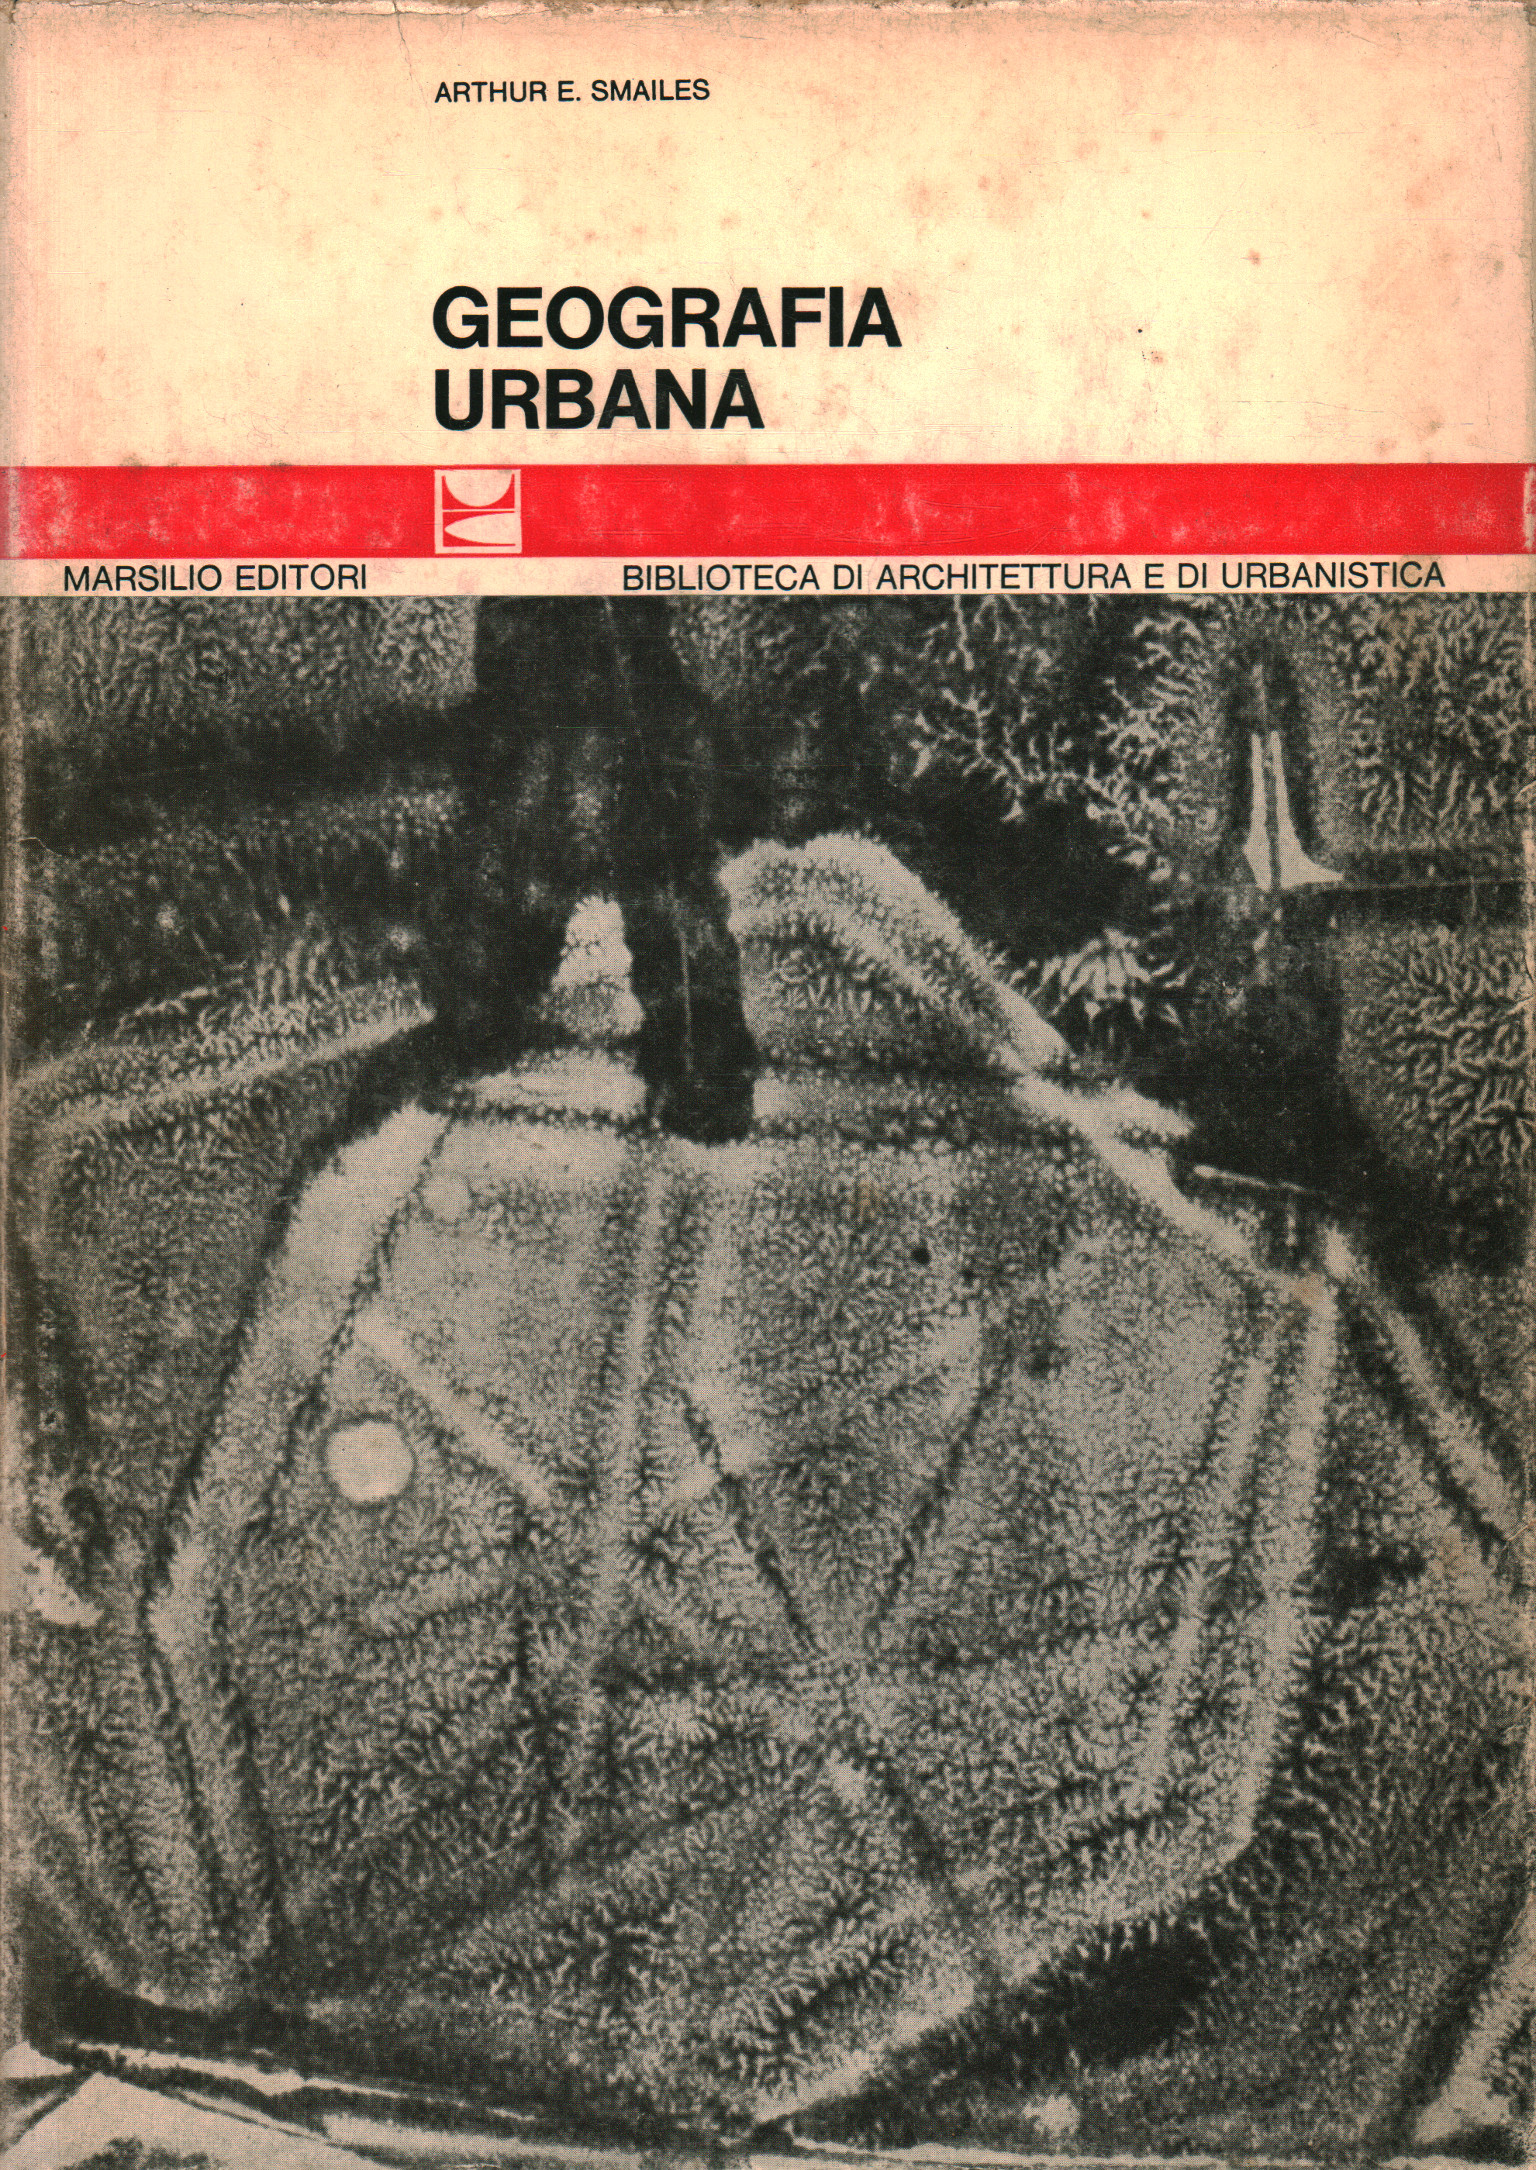 Geografía urbana, Arthur E. Smailes